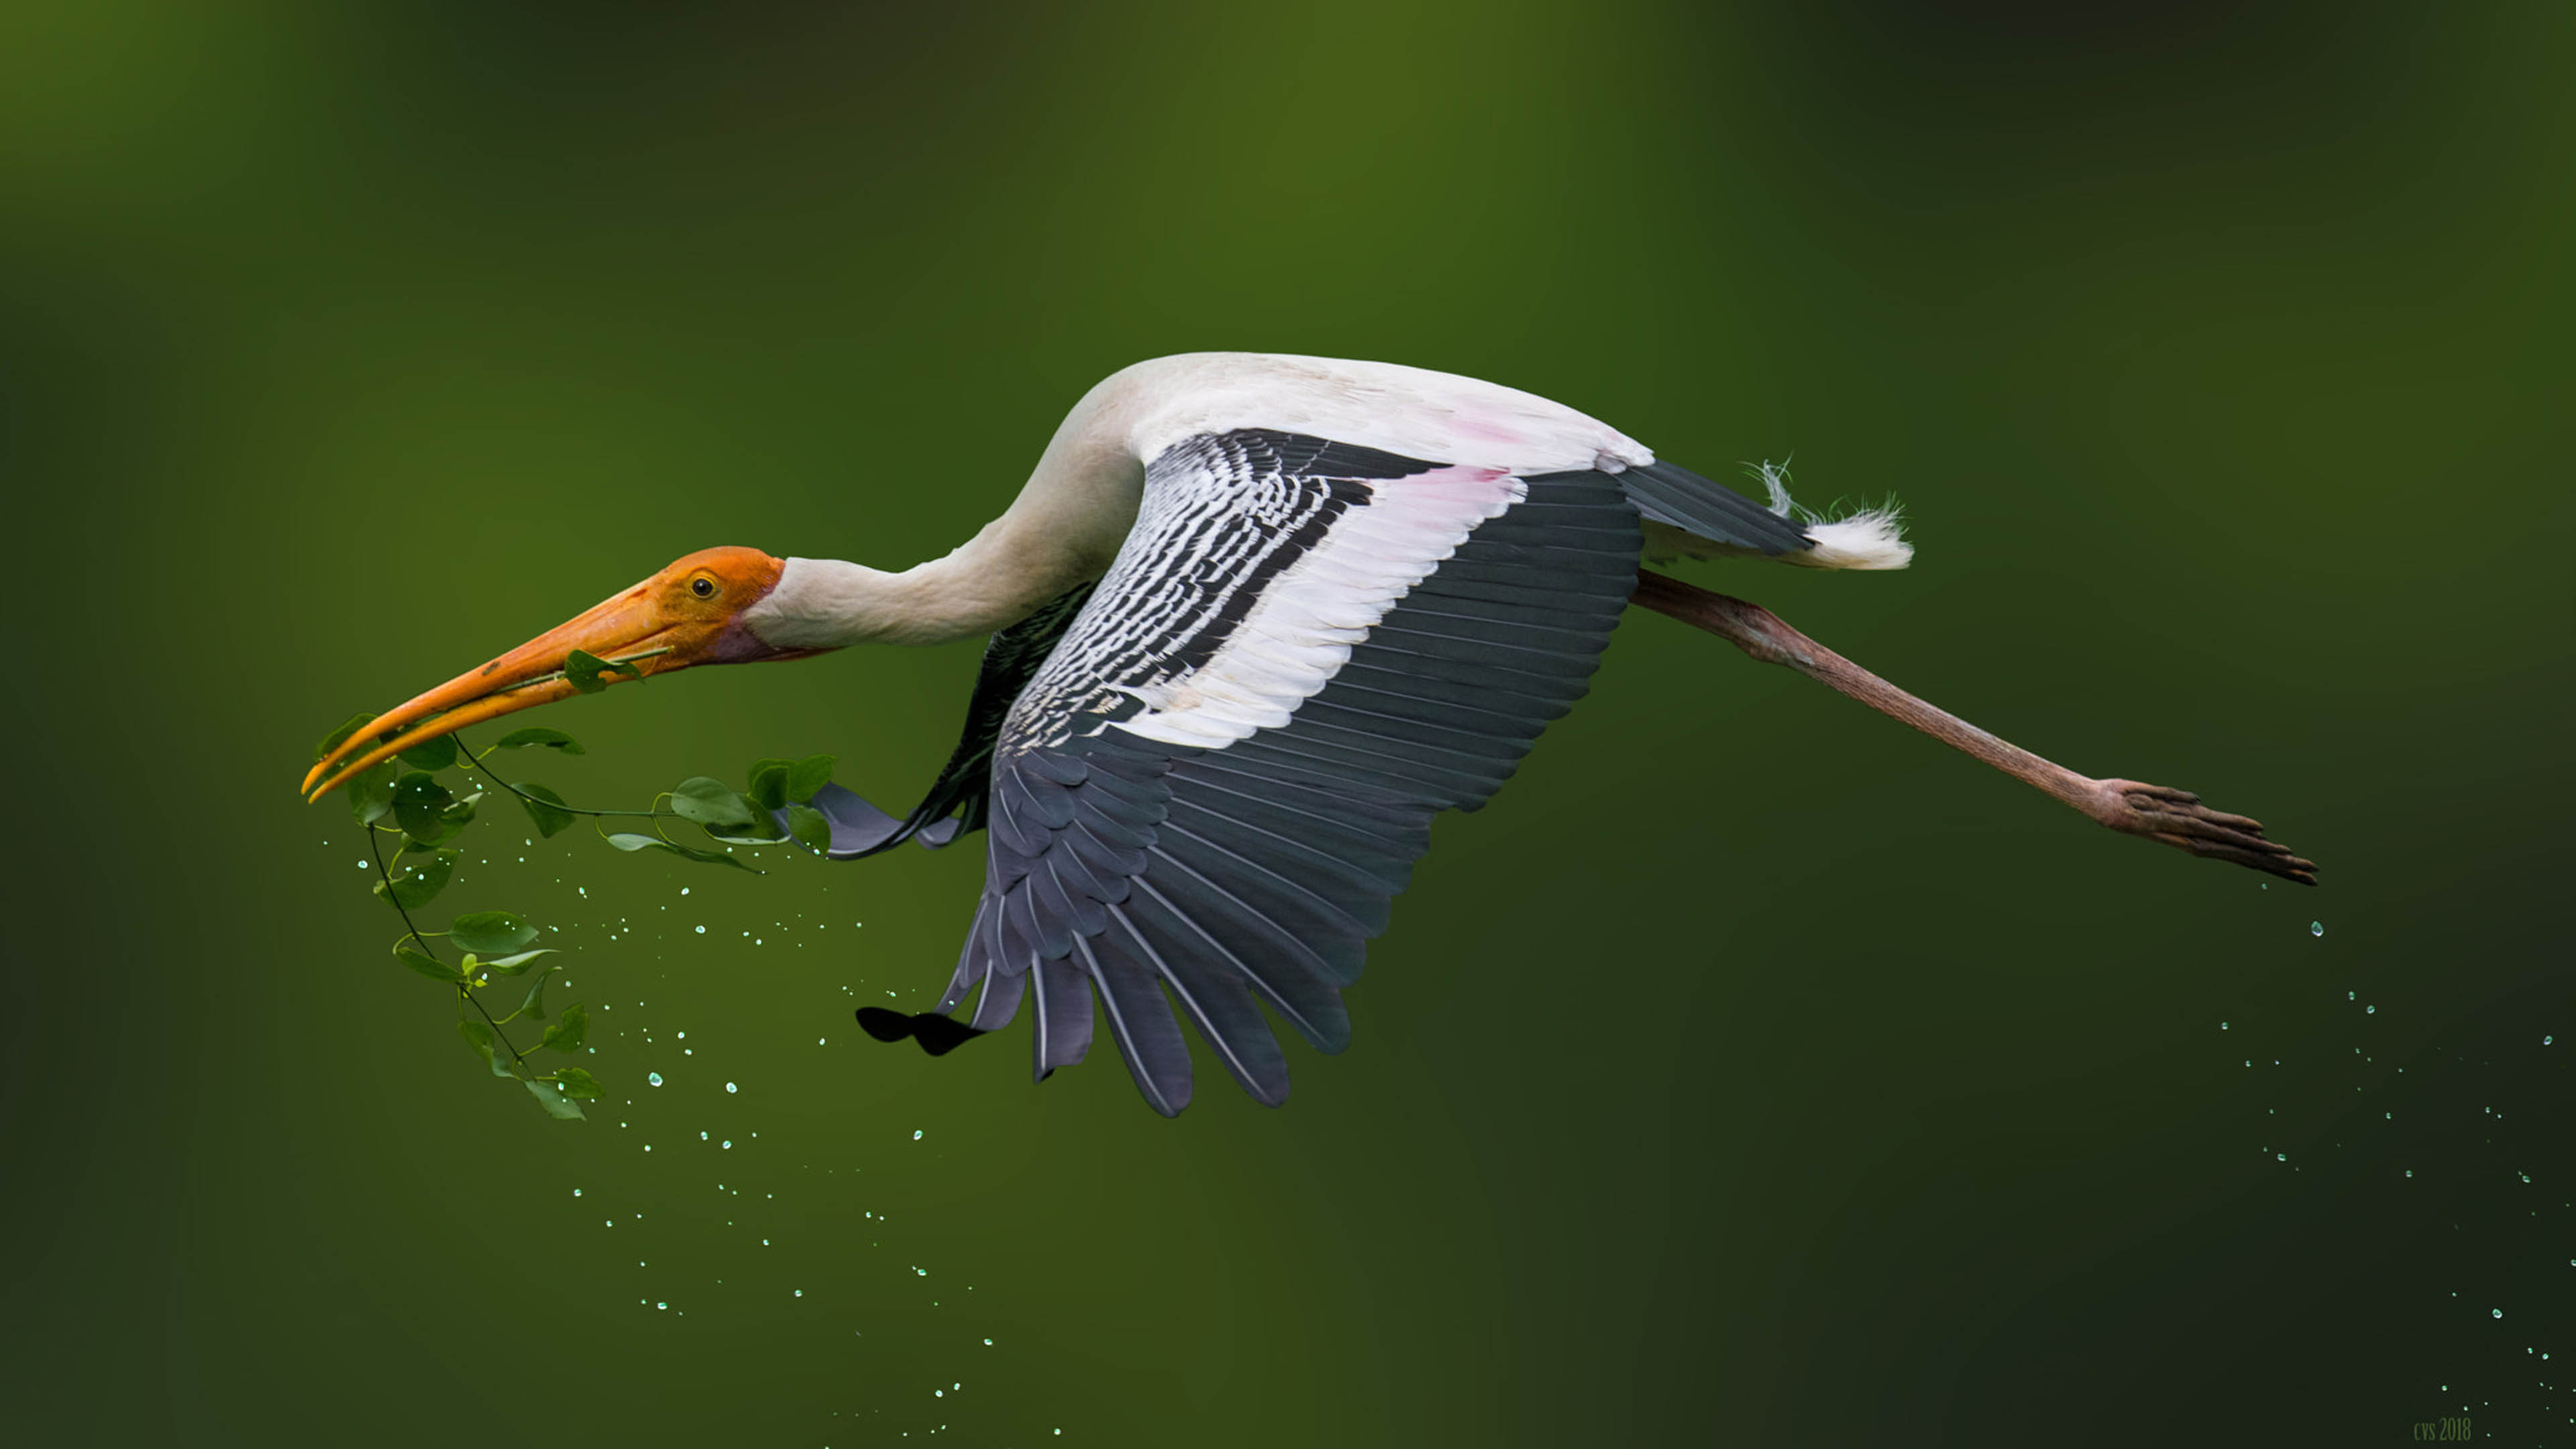 Painted storks, Nest-making material, Close-up shot, Vibrant backgrounds, 3840x2160 4K Desktop